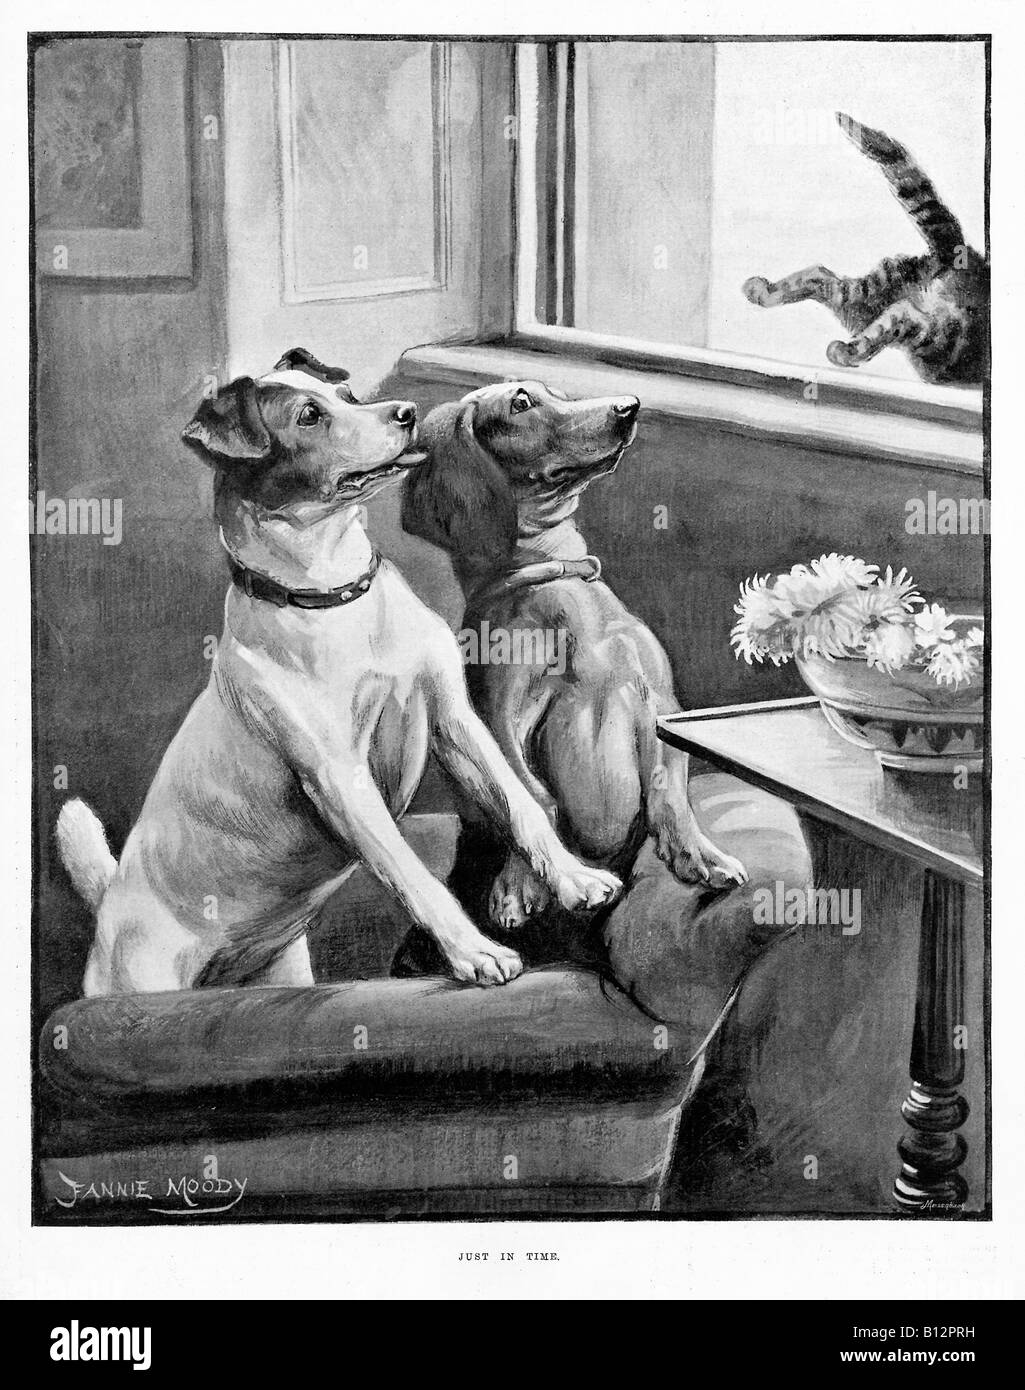 Nur In Zeit viktorianischen Abbildung der Katze die Hunde durch einen Sprung aus dem Fenster zu entkommen Stockfoto